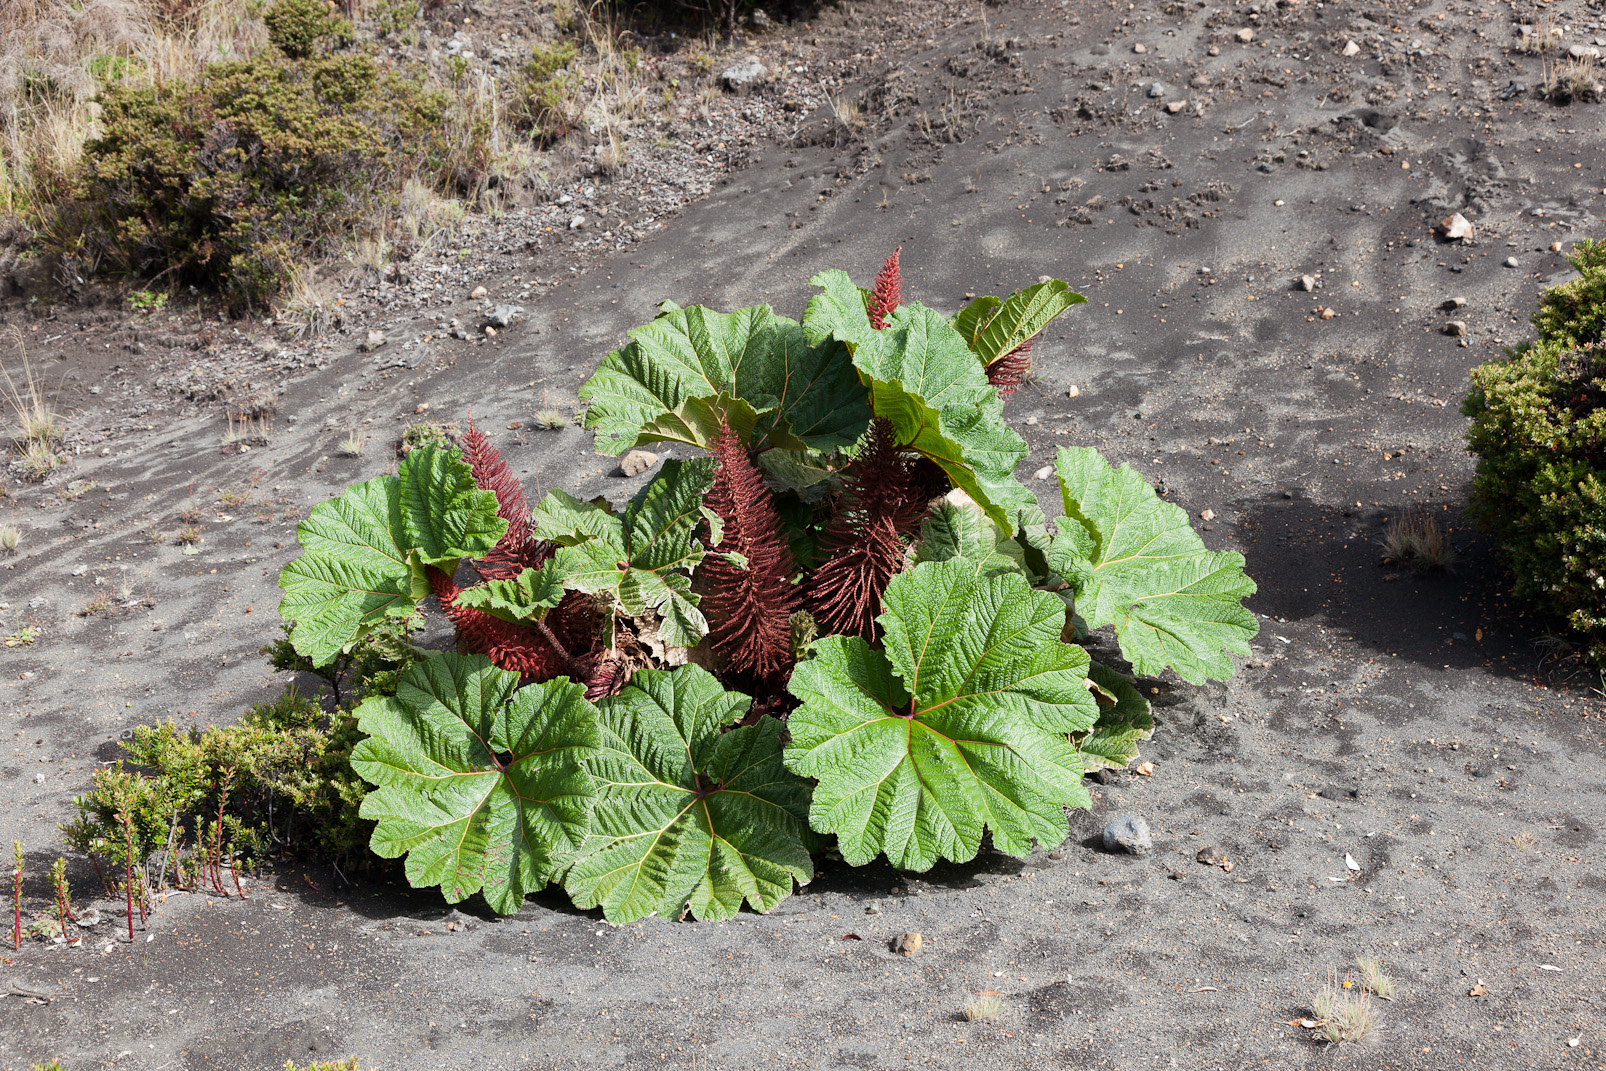 Sur le volcan Irazu (3432 m.), cette plante est nommée "parapluie du pauvre".